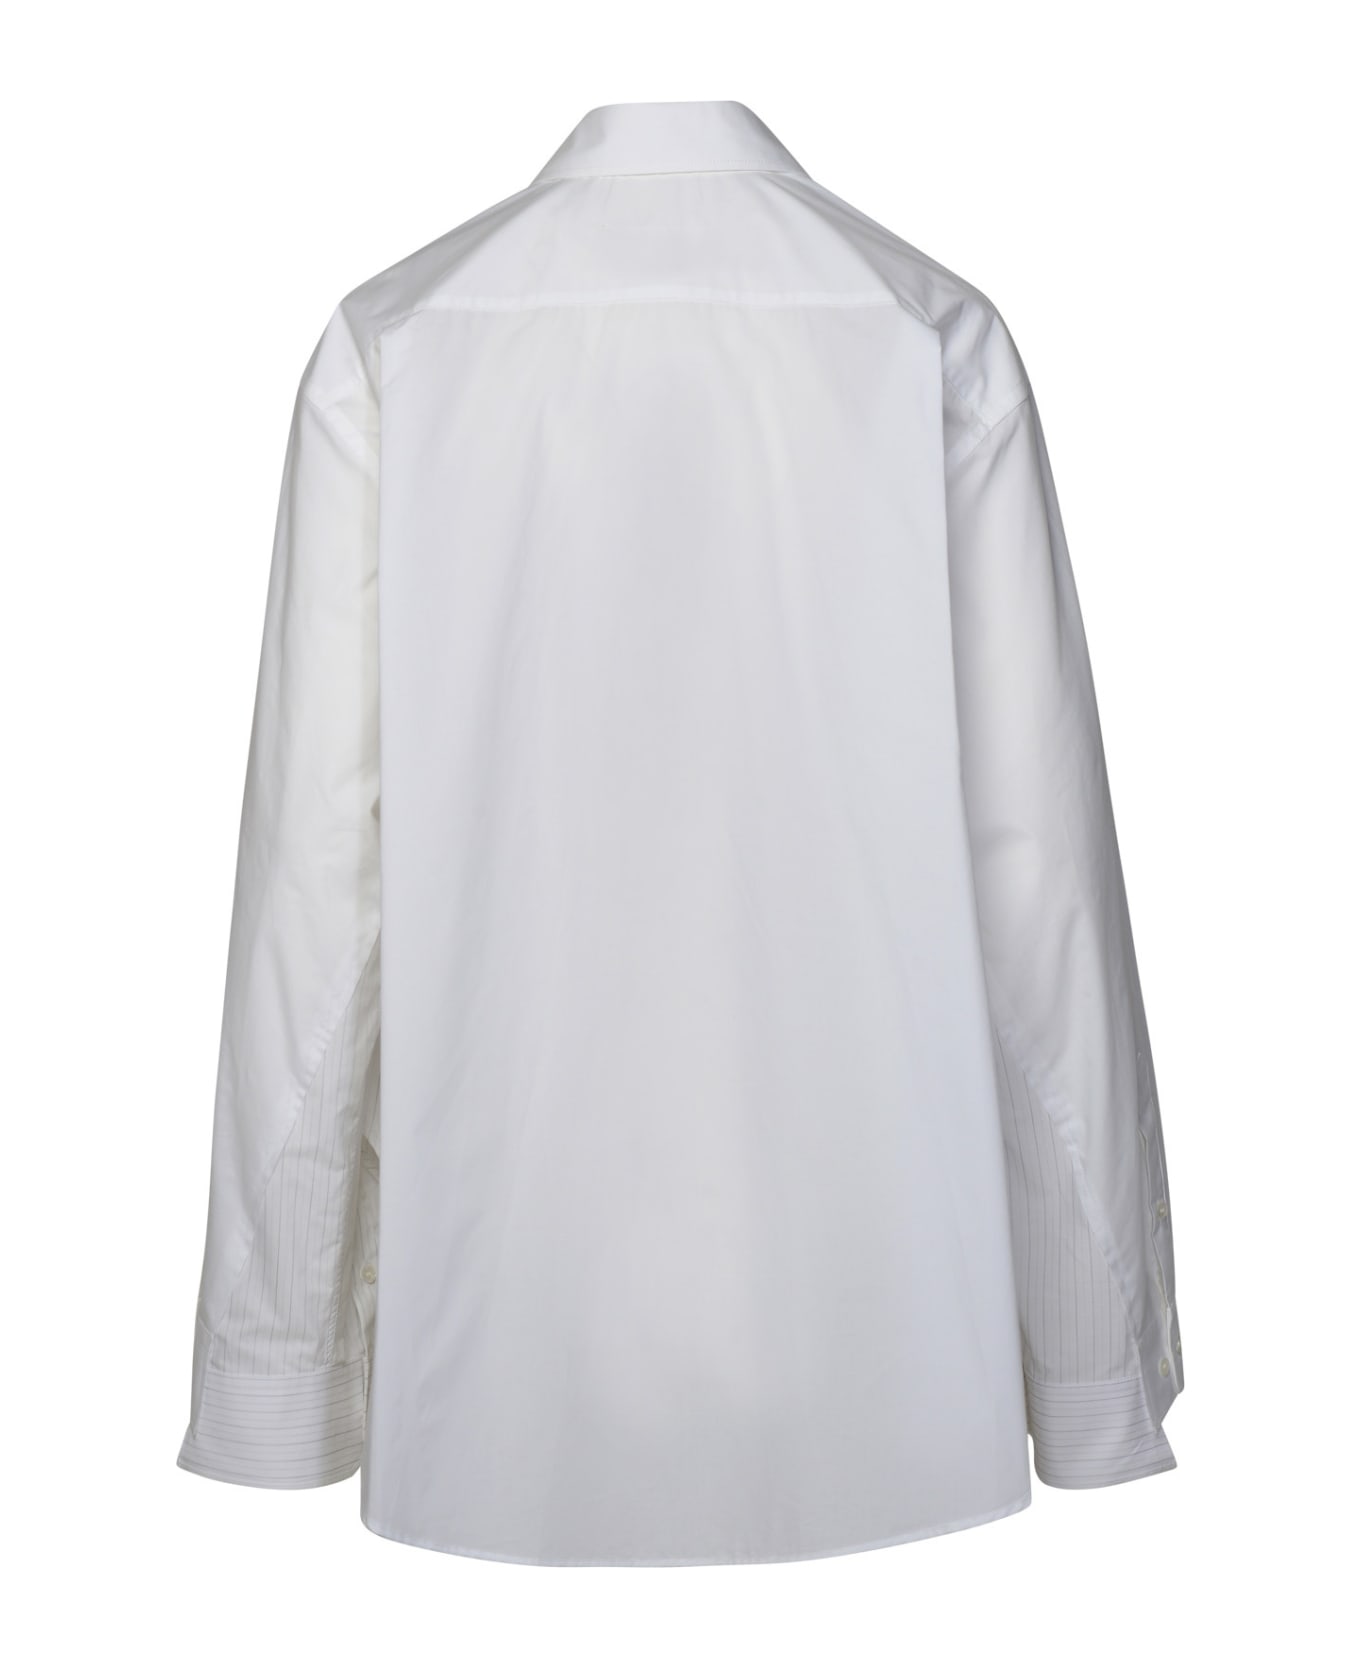 MM6 Maison Margiela White Cotton Shirt - White シャツ